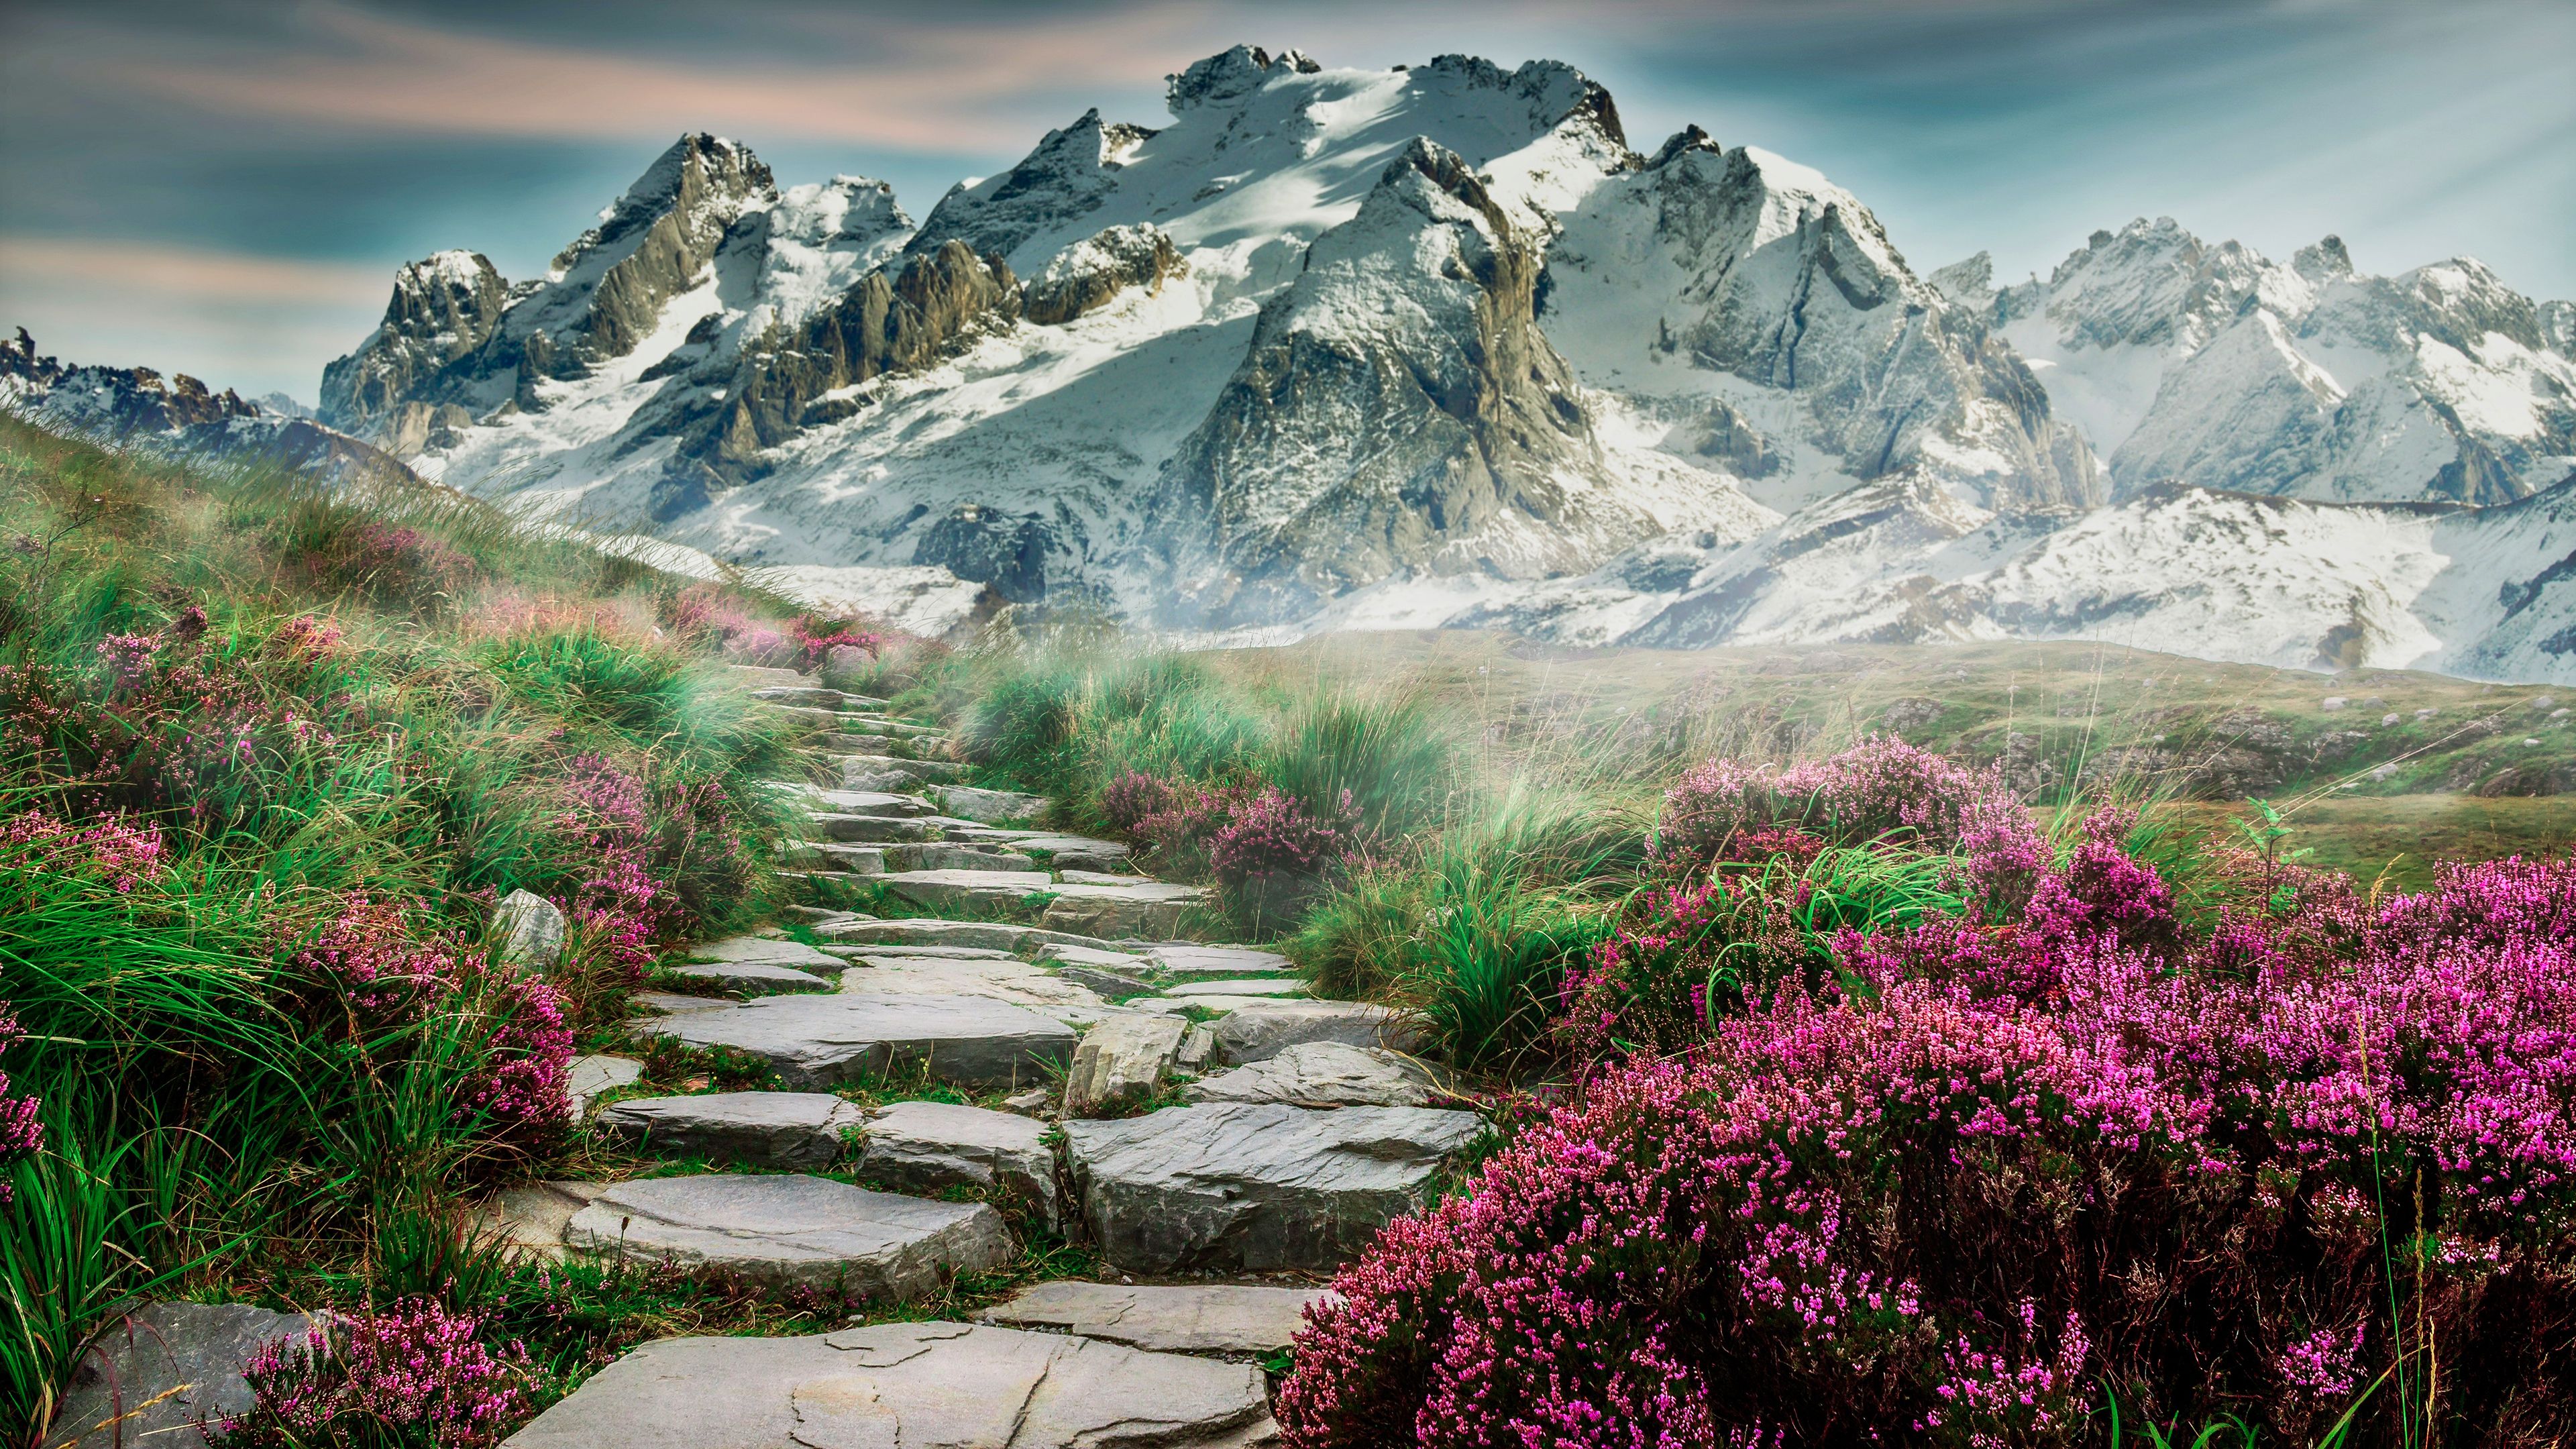 Mountains, Path, Hill, Spring, Landscape, Scenery, 4k Free deskk wallpaper, Ultra HD